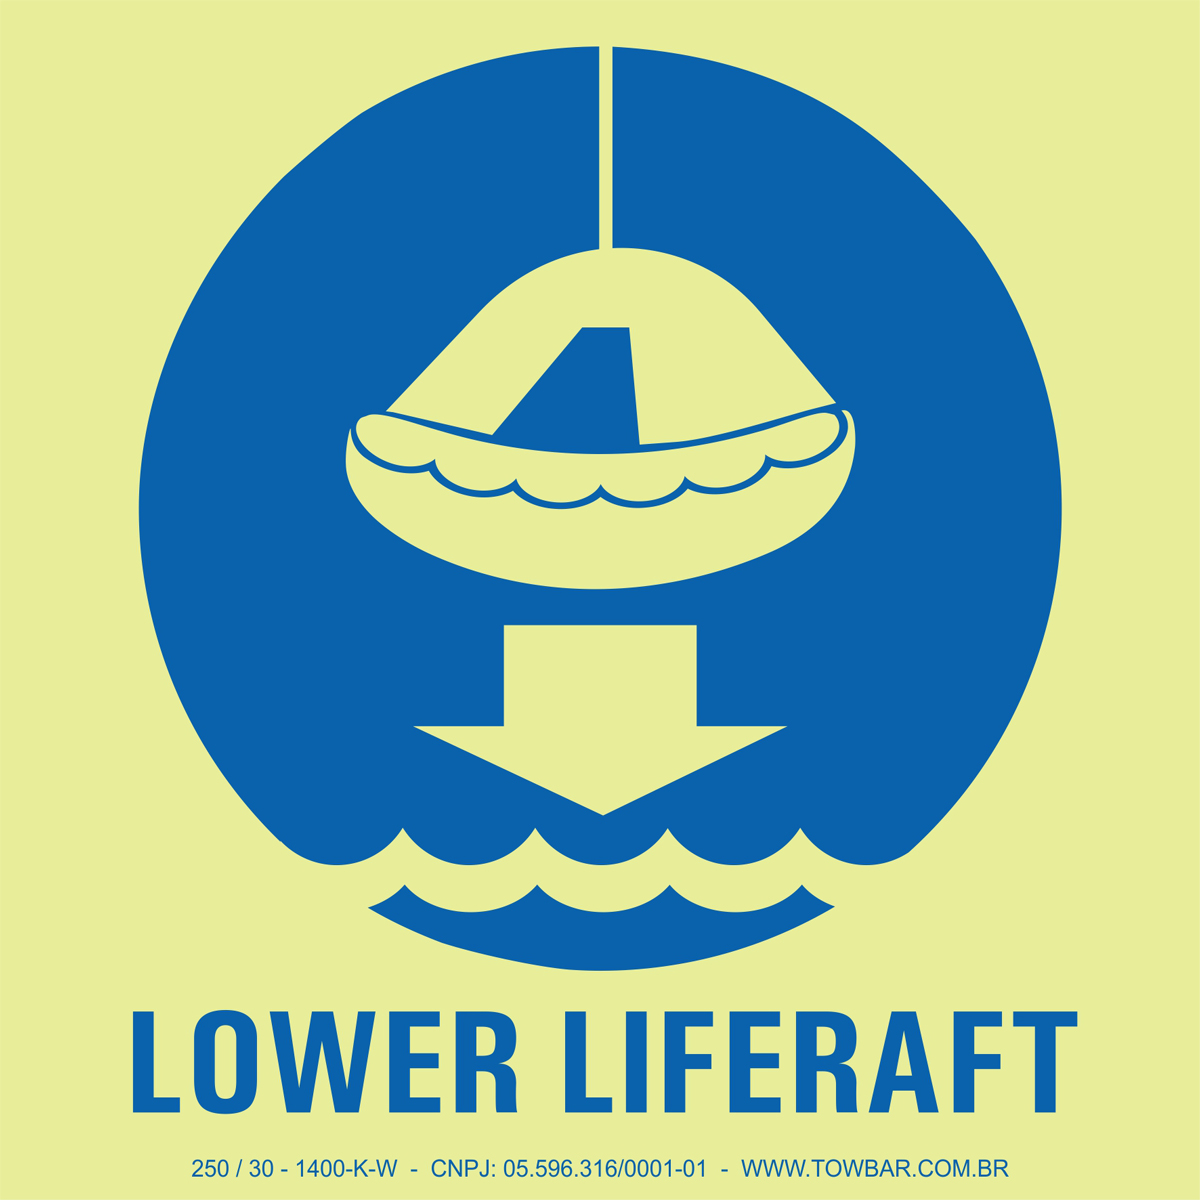 Baixar balsa salva-vidas (Lower Liferaft)  - Towbar Sinalização de Segurança